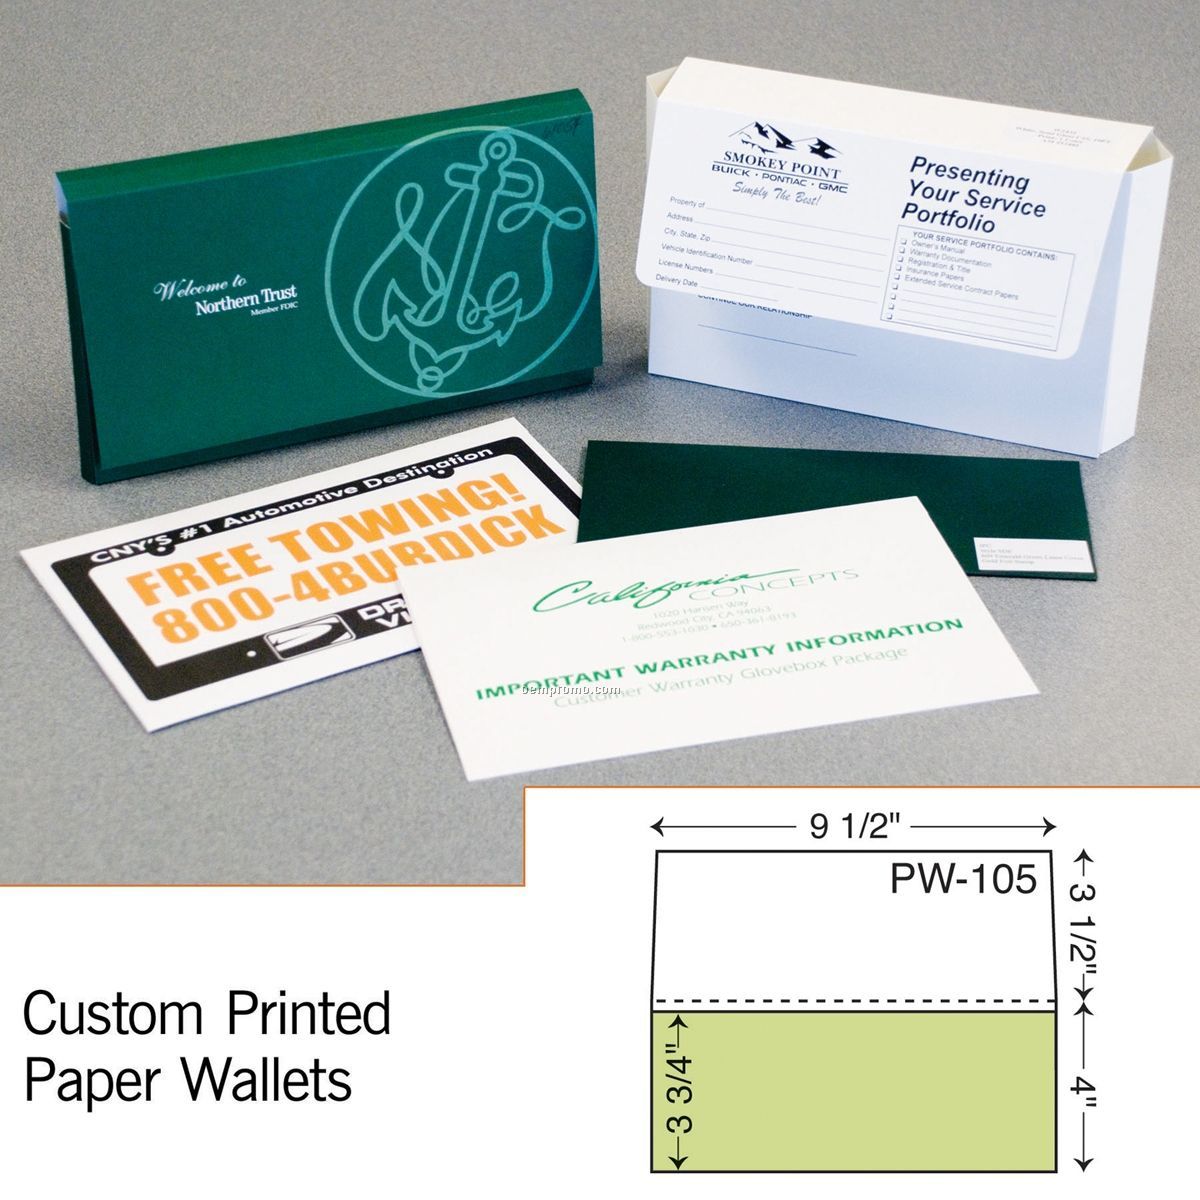 Standard Paper Wallet (1 Color/1 Side)